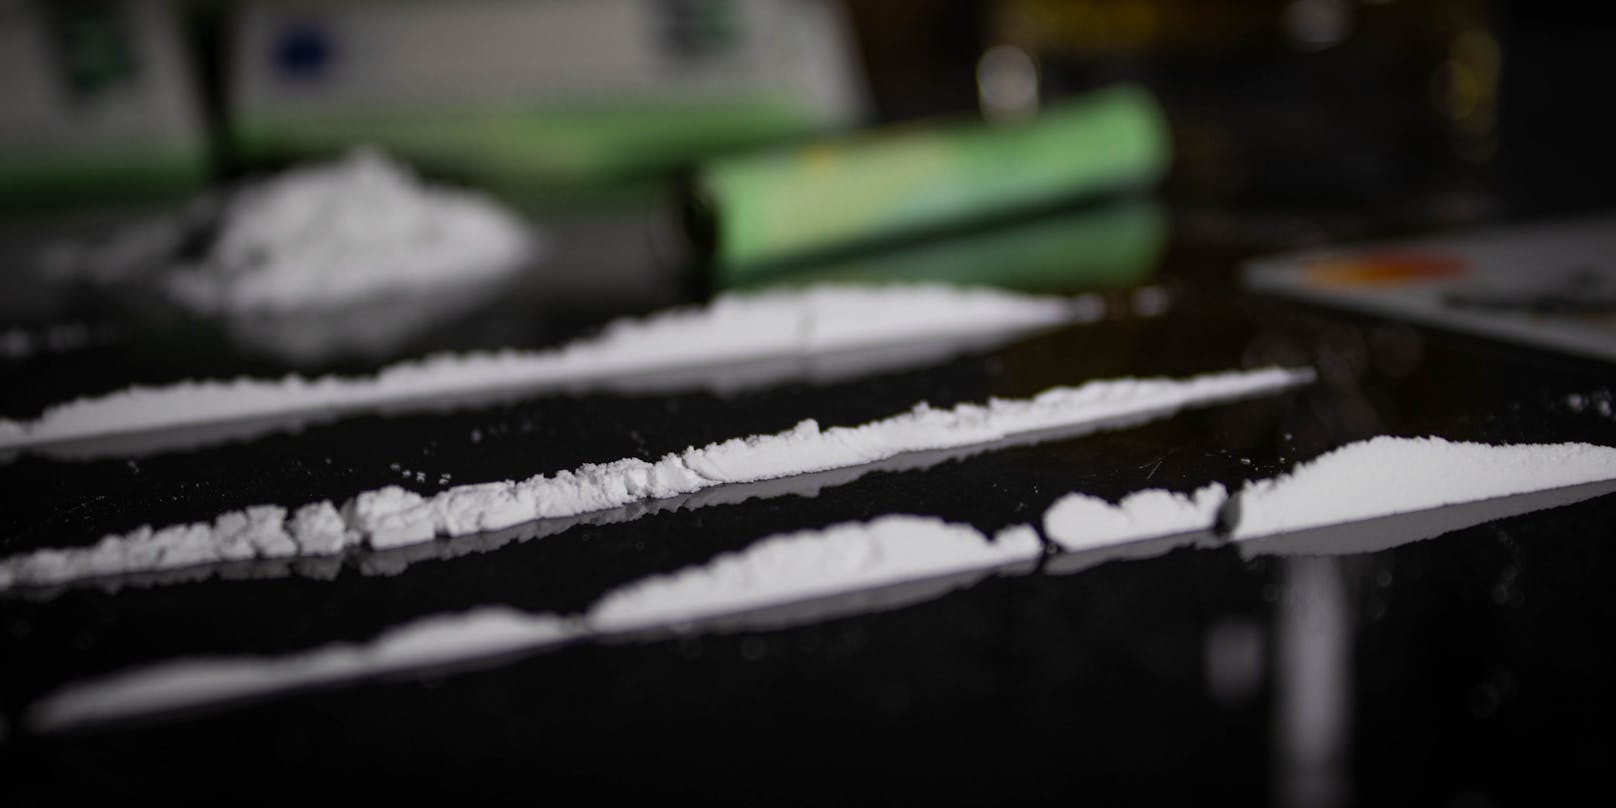 537 Milligramm an Kokainrückständen konnten in Kufstein gemessen werden.